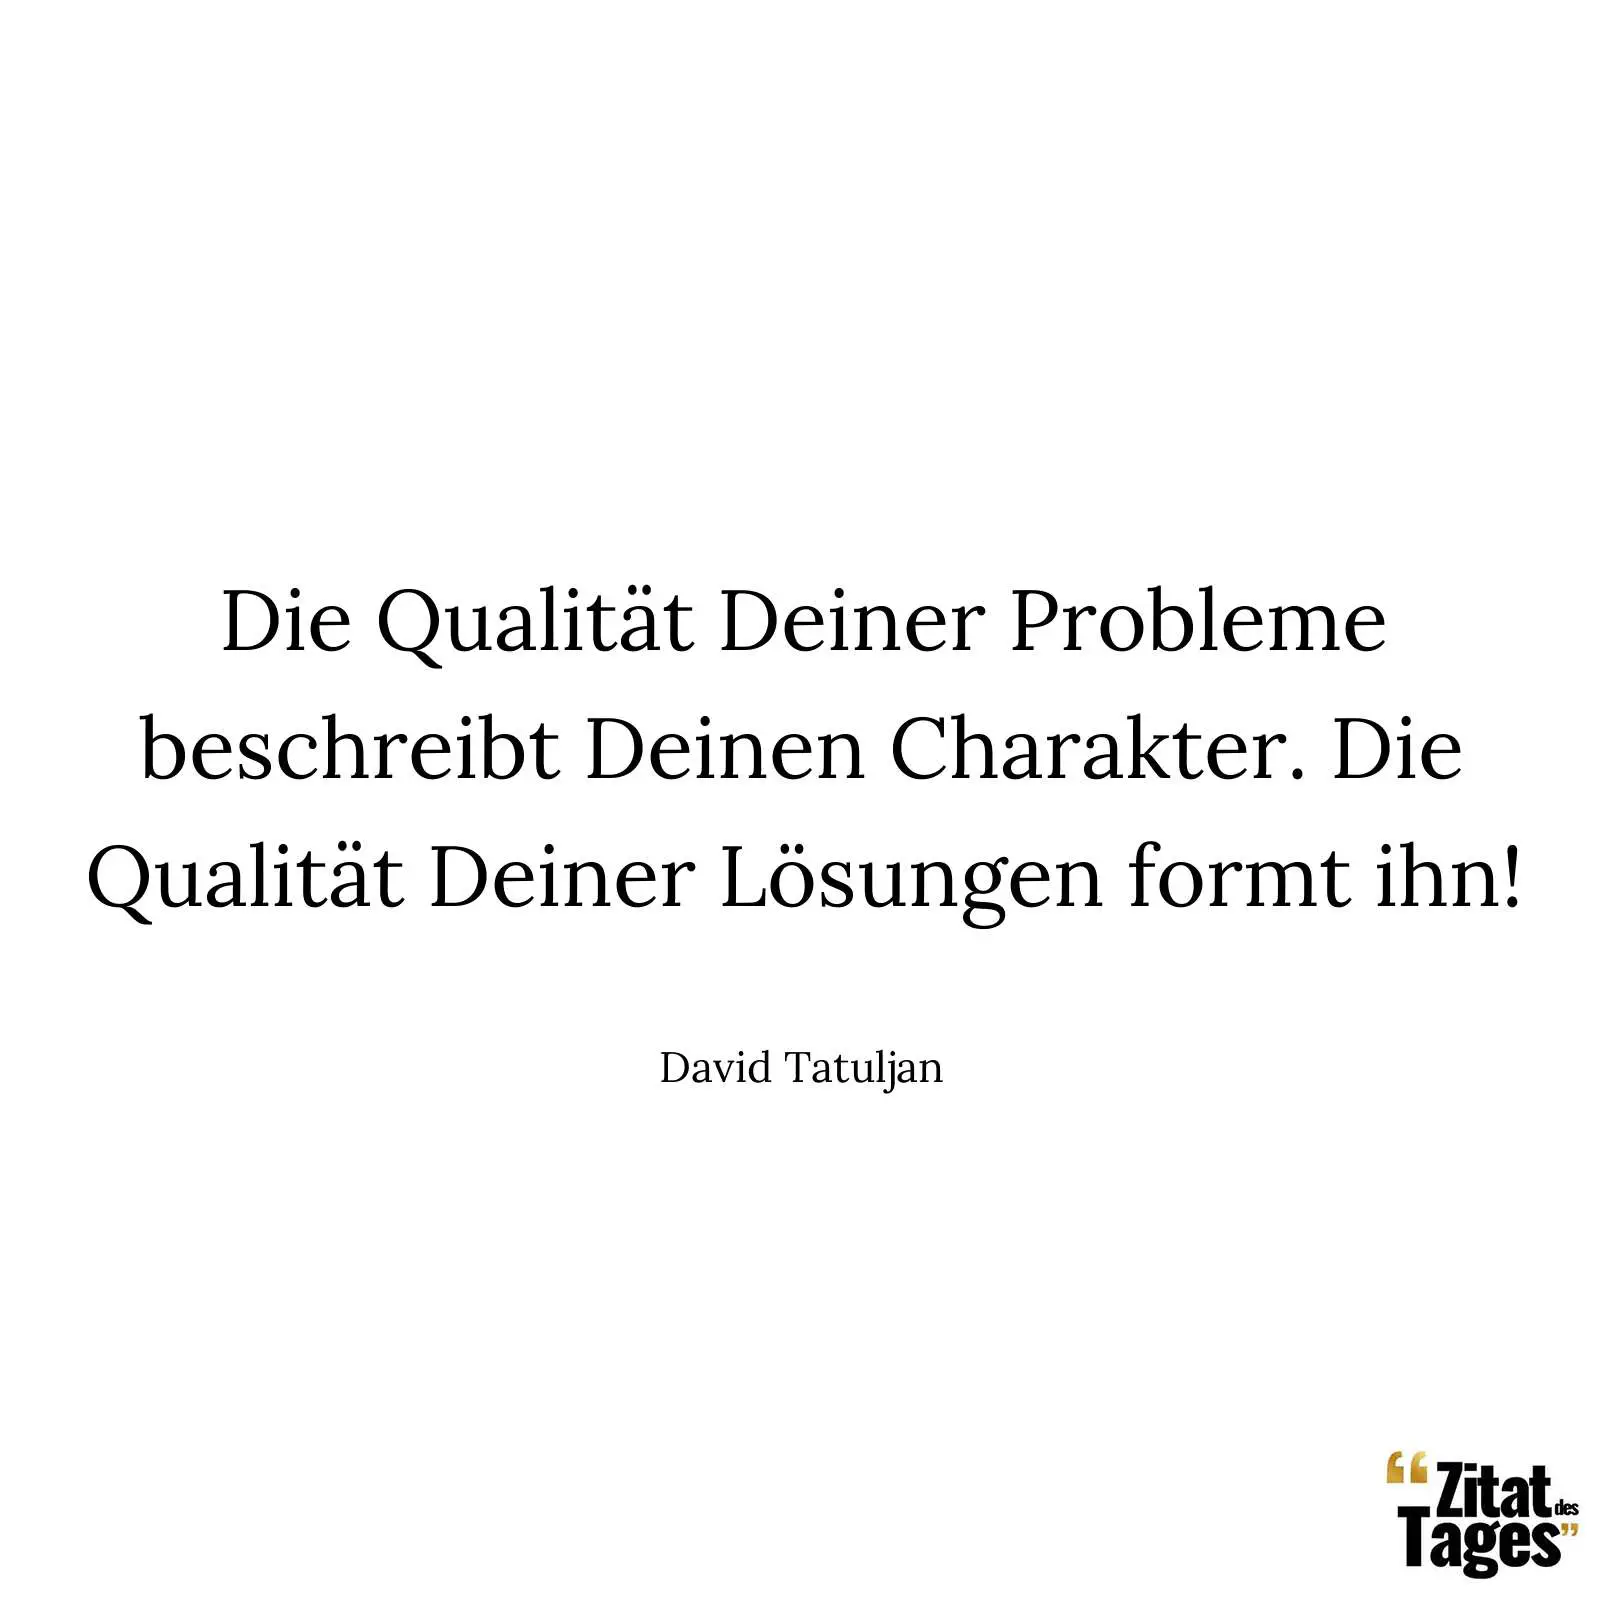 Die Qualität Deiner Probleme beschreibt Deinen Charakter. Die Qualität Deiner Lösungen formt ihn! - David Tatuljan